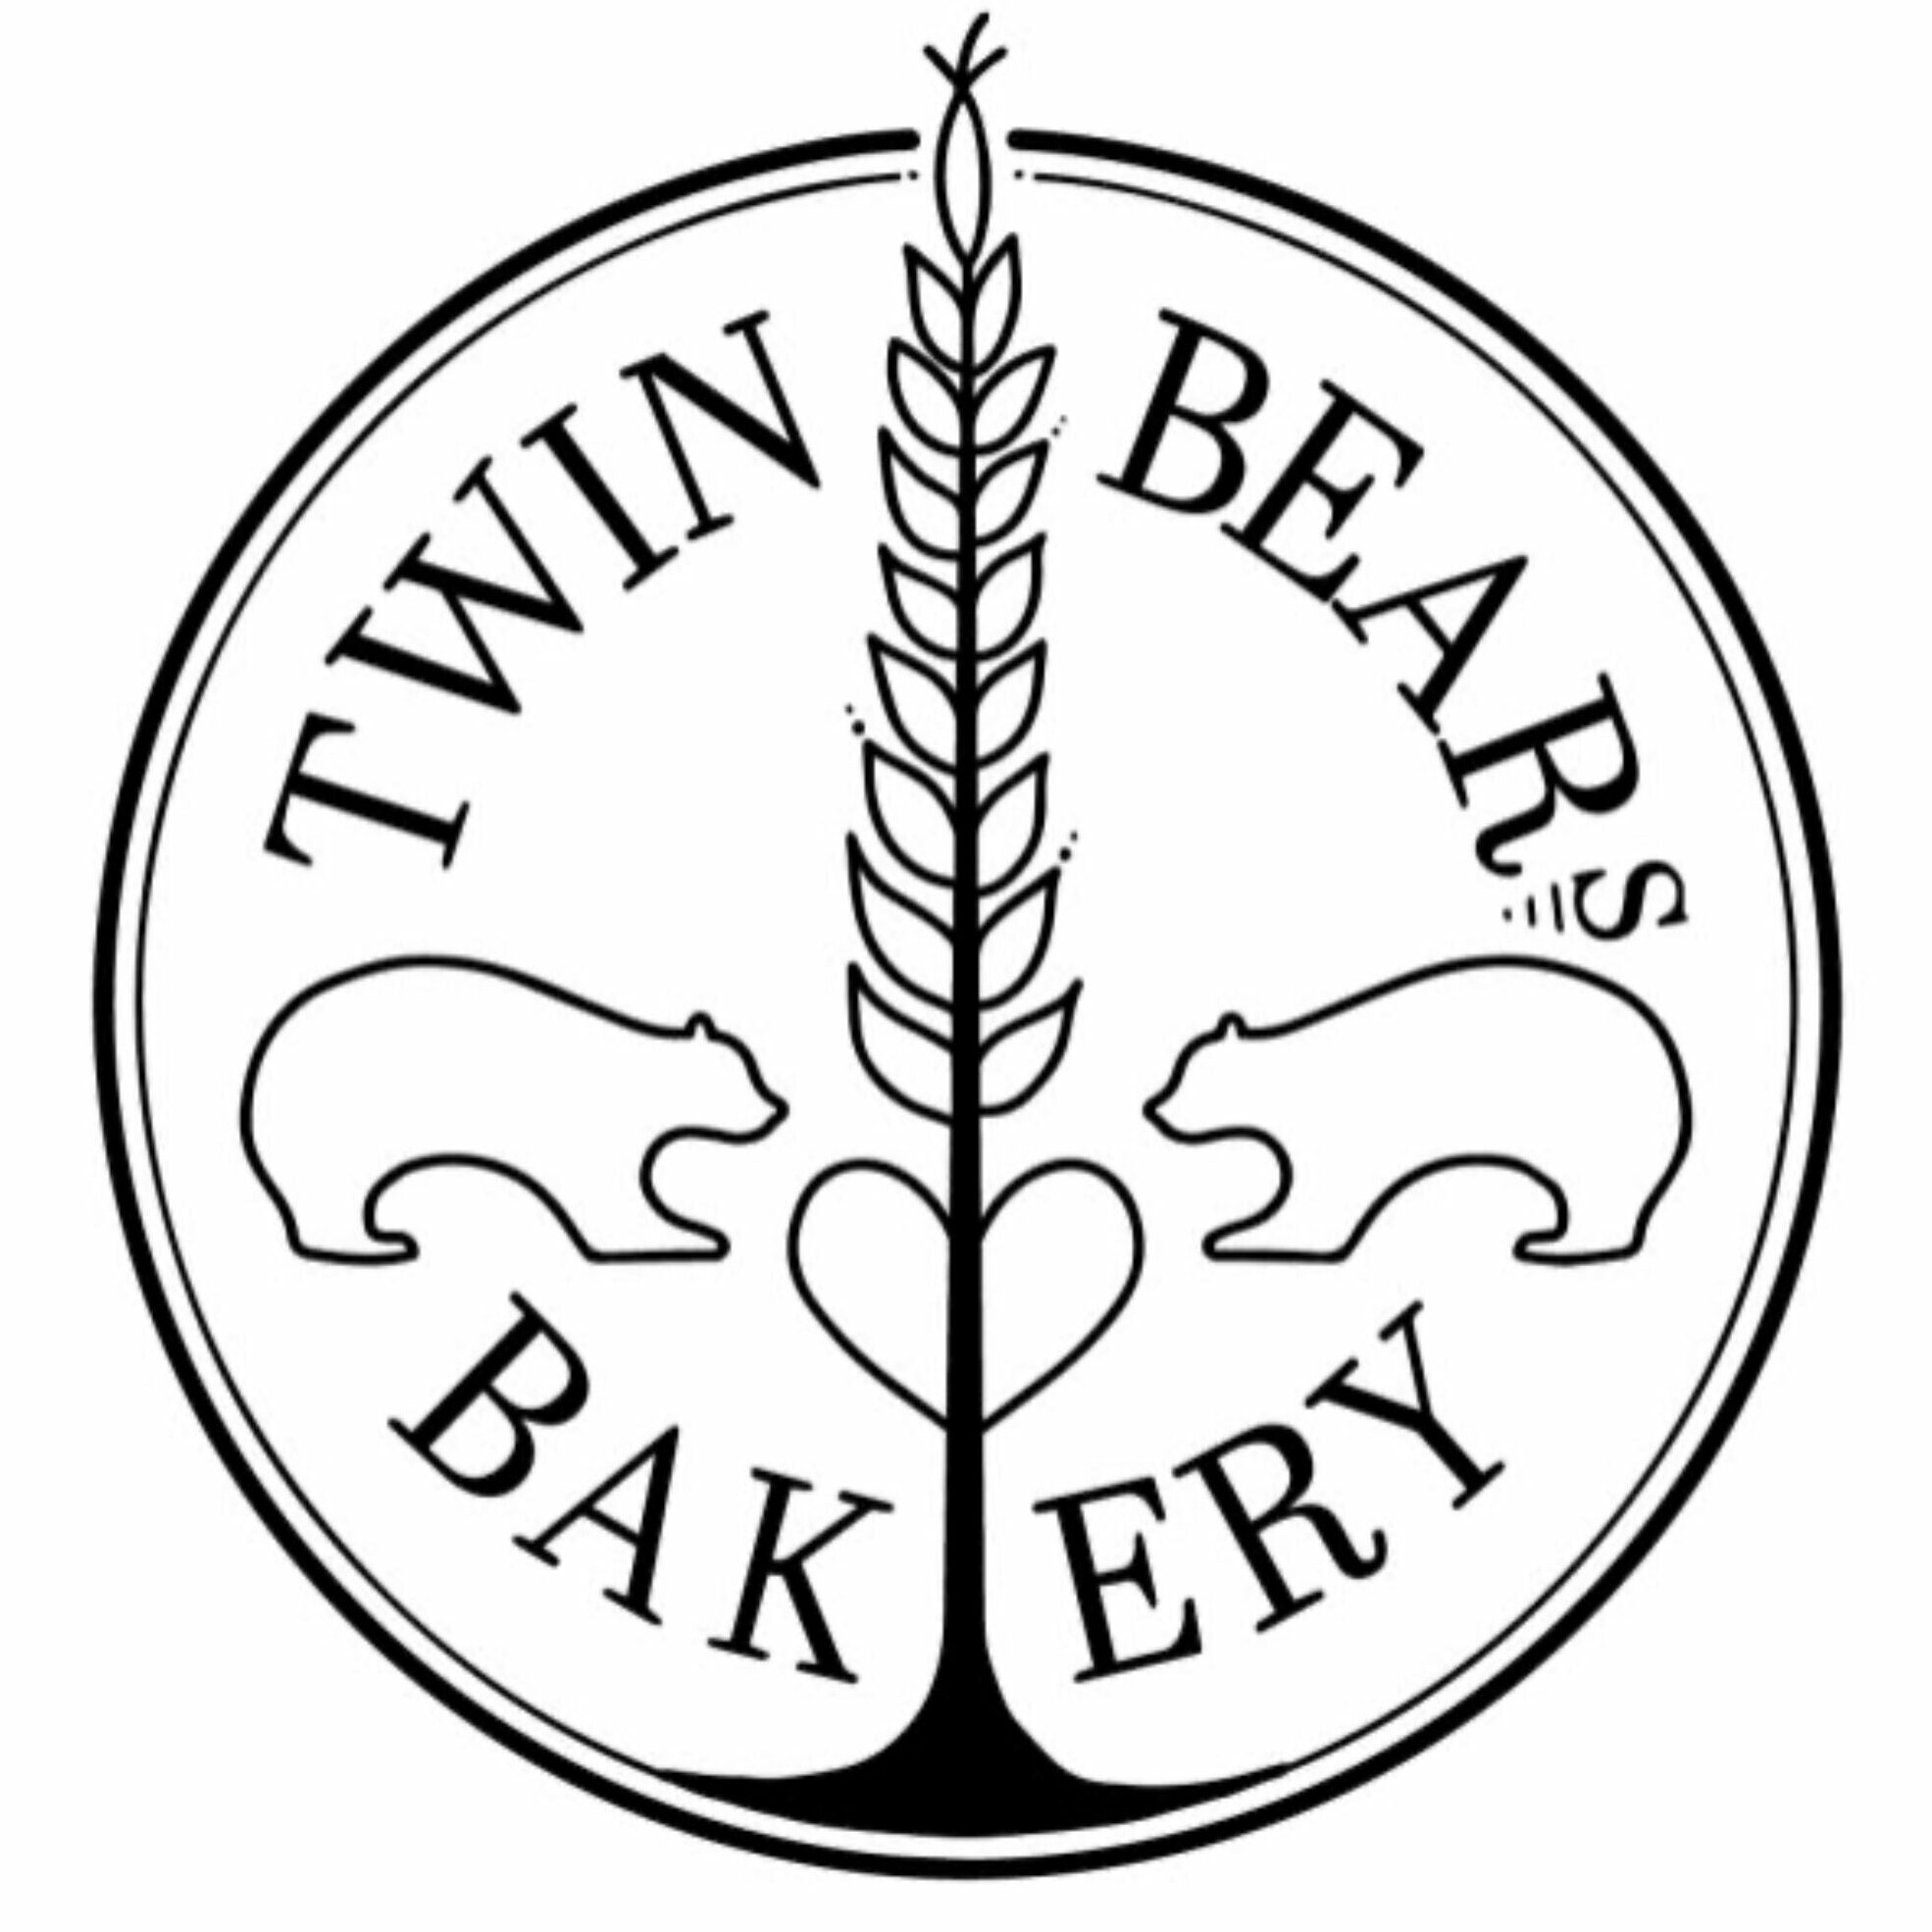 Twin Bears Bakery